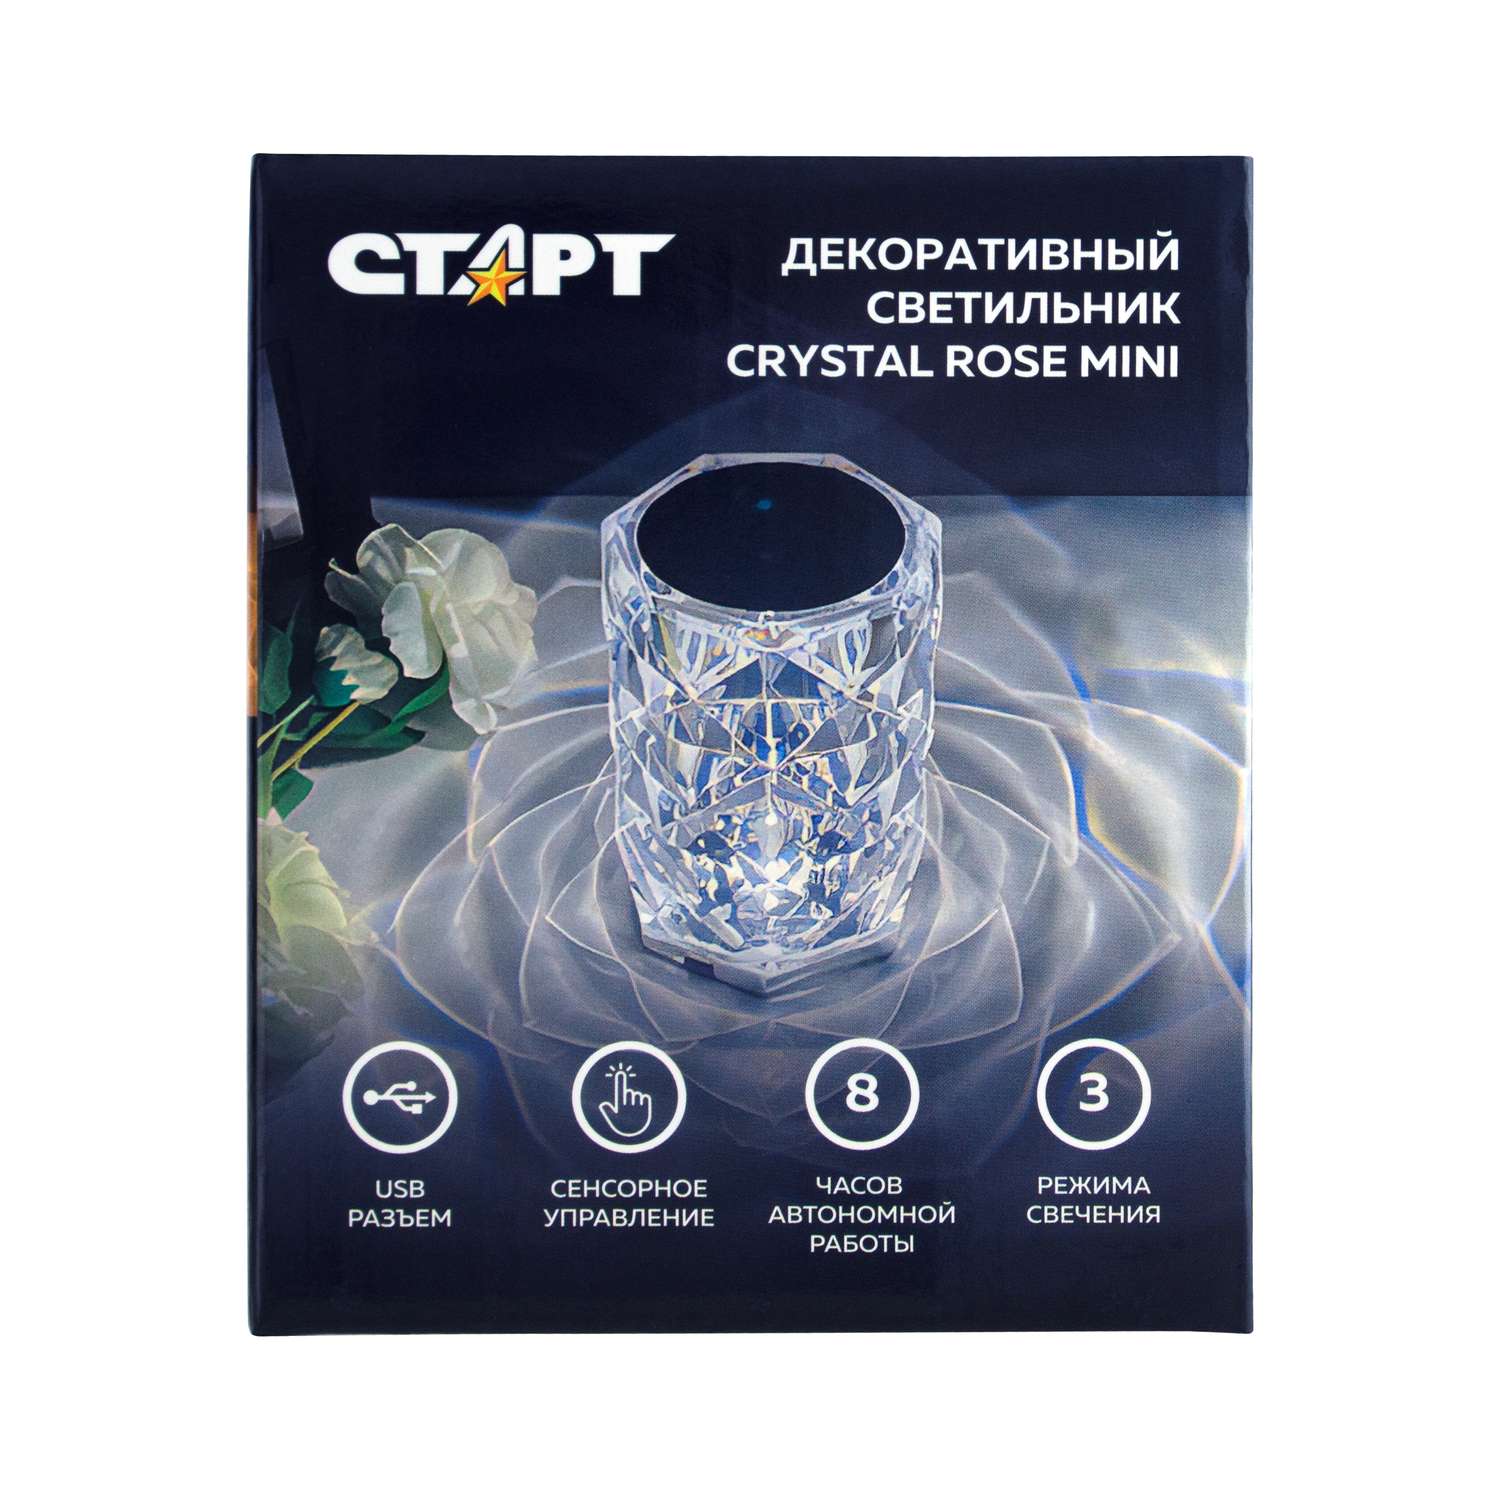 Светильник ночник СТАРТ декоративный кристаллической формы Crystal Rose mini - фото 1